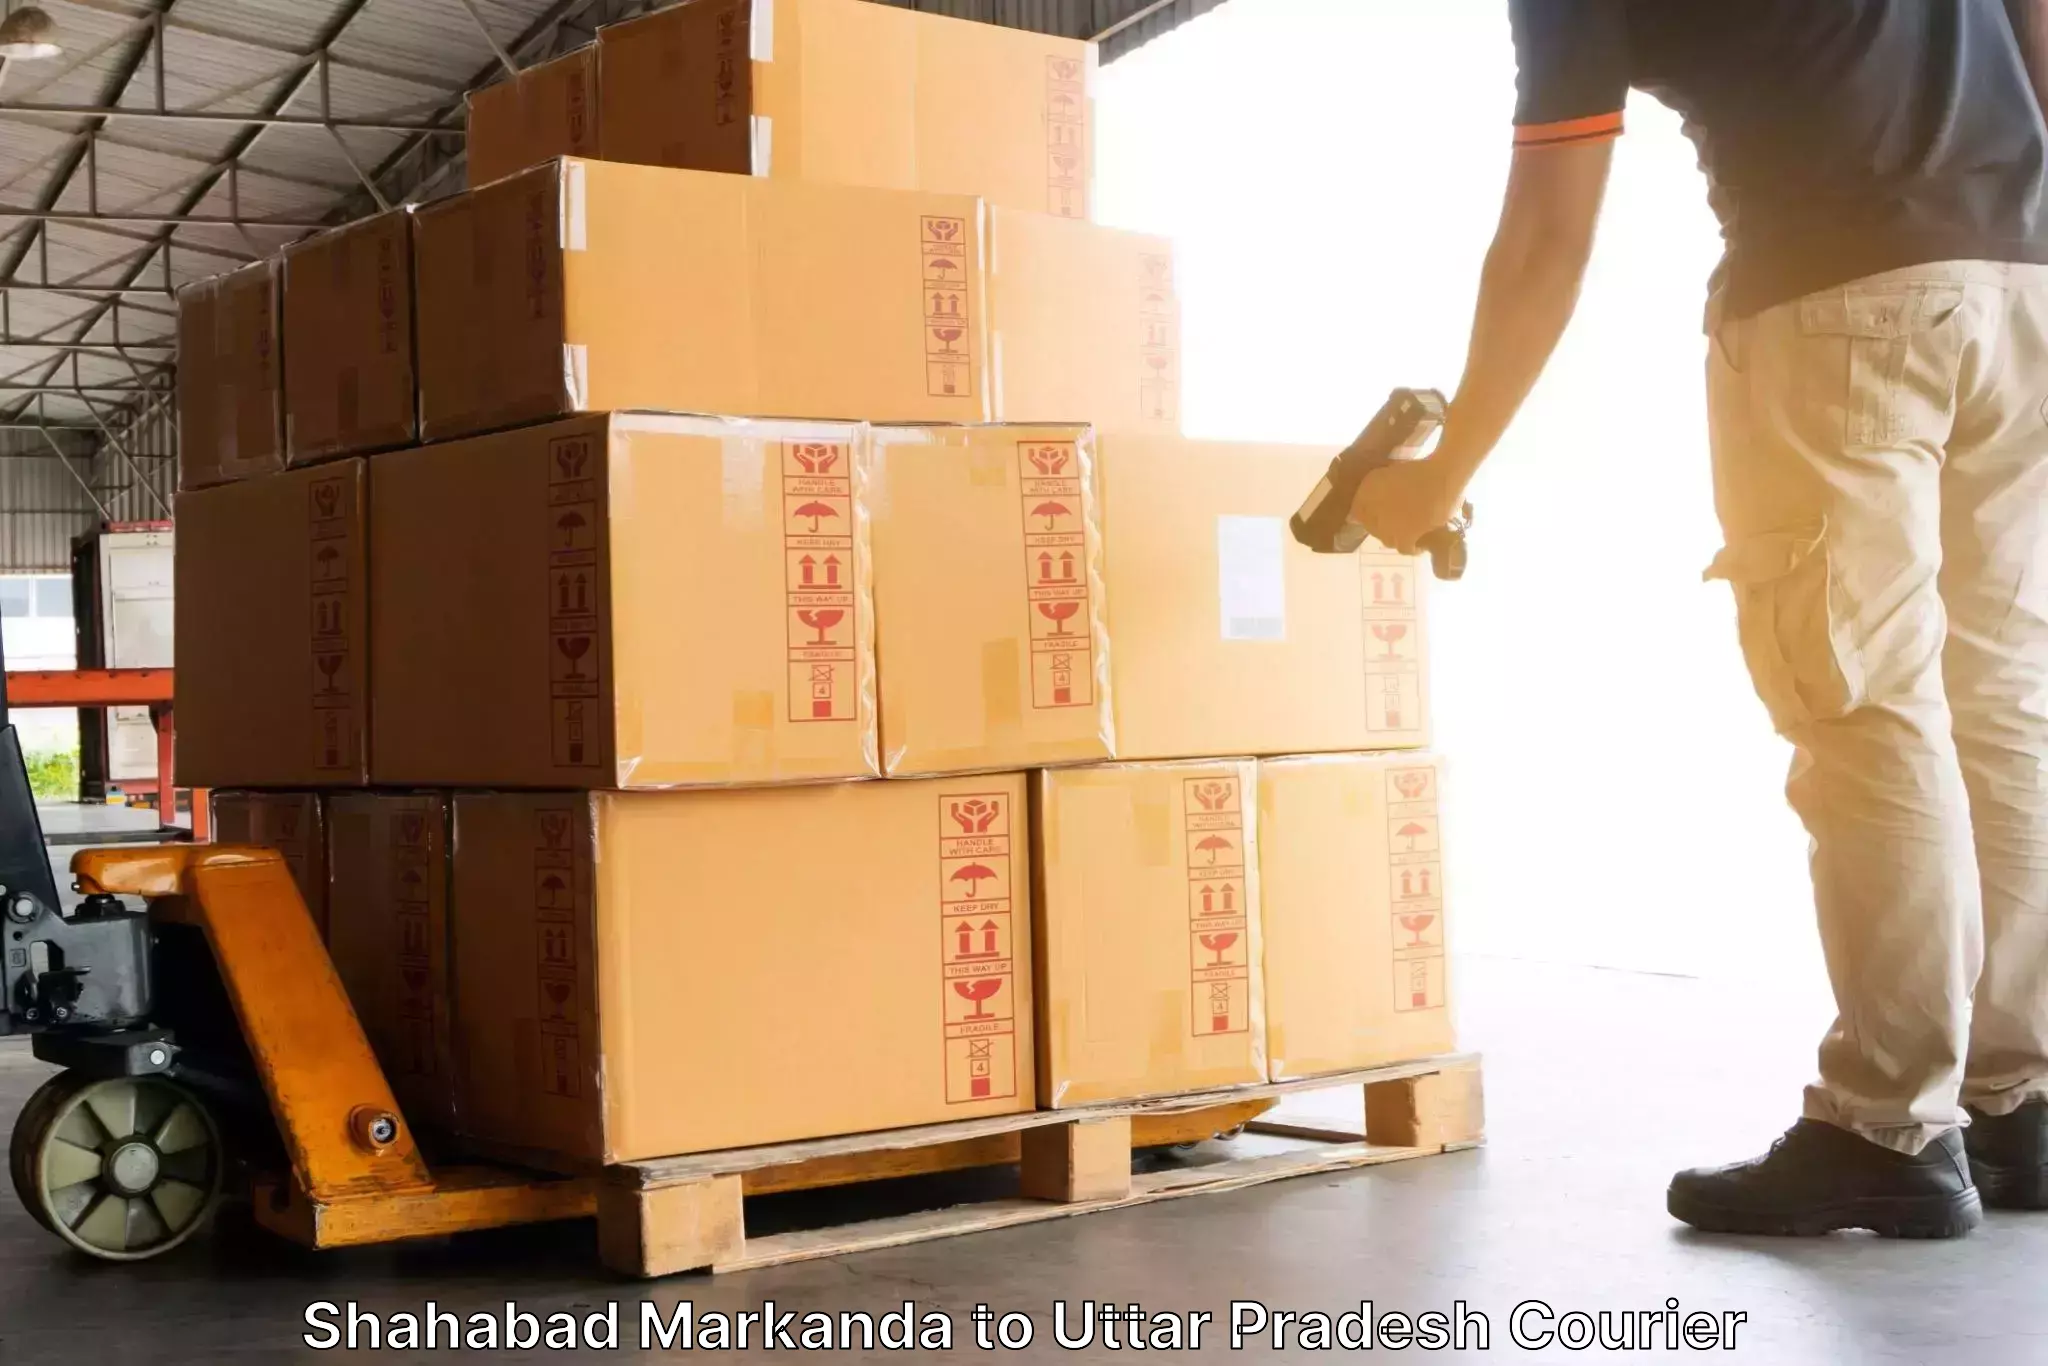 Global freight services in Shahabad Markanda to Kerakat